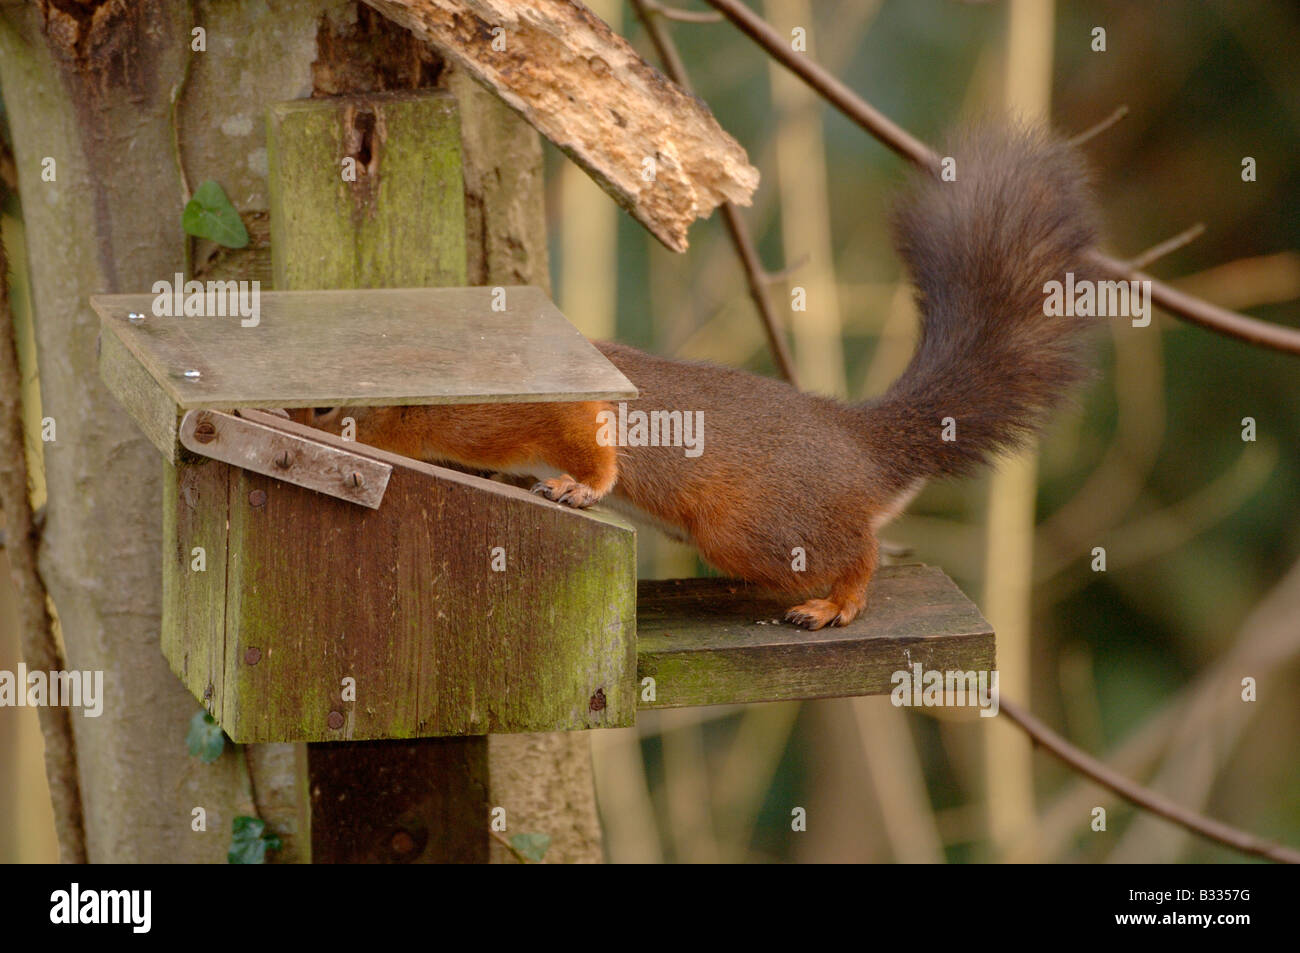 Eichhörnchen Sciurus Vulgaris Essen aus der Eichhörnchen-Station in England fotografiert Stockfoto